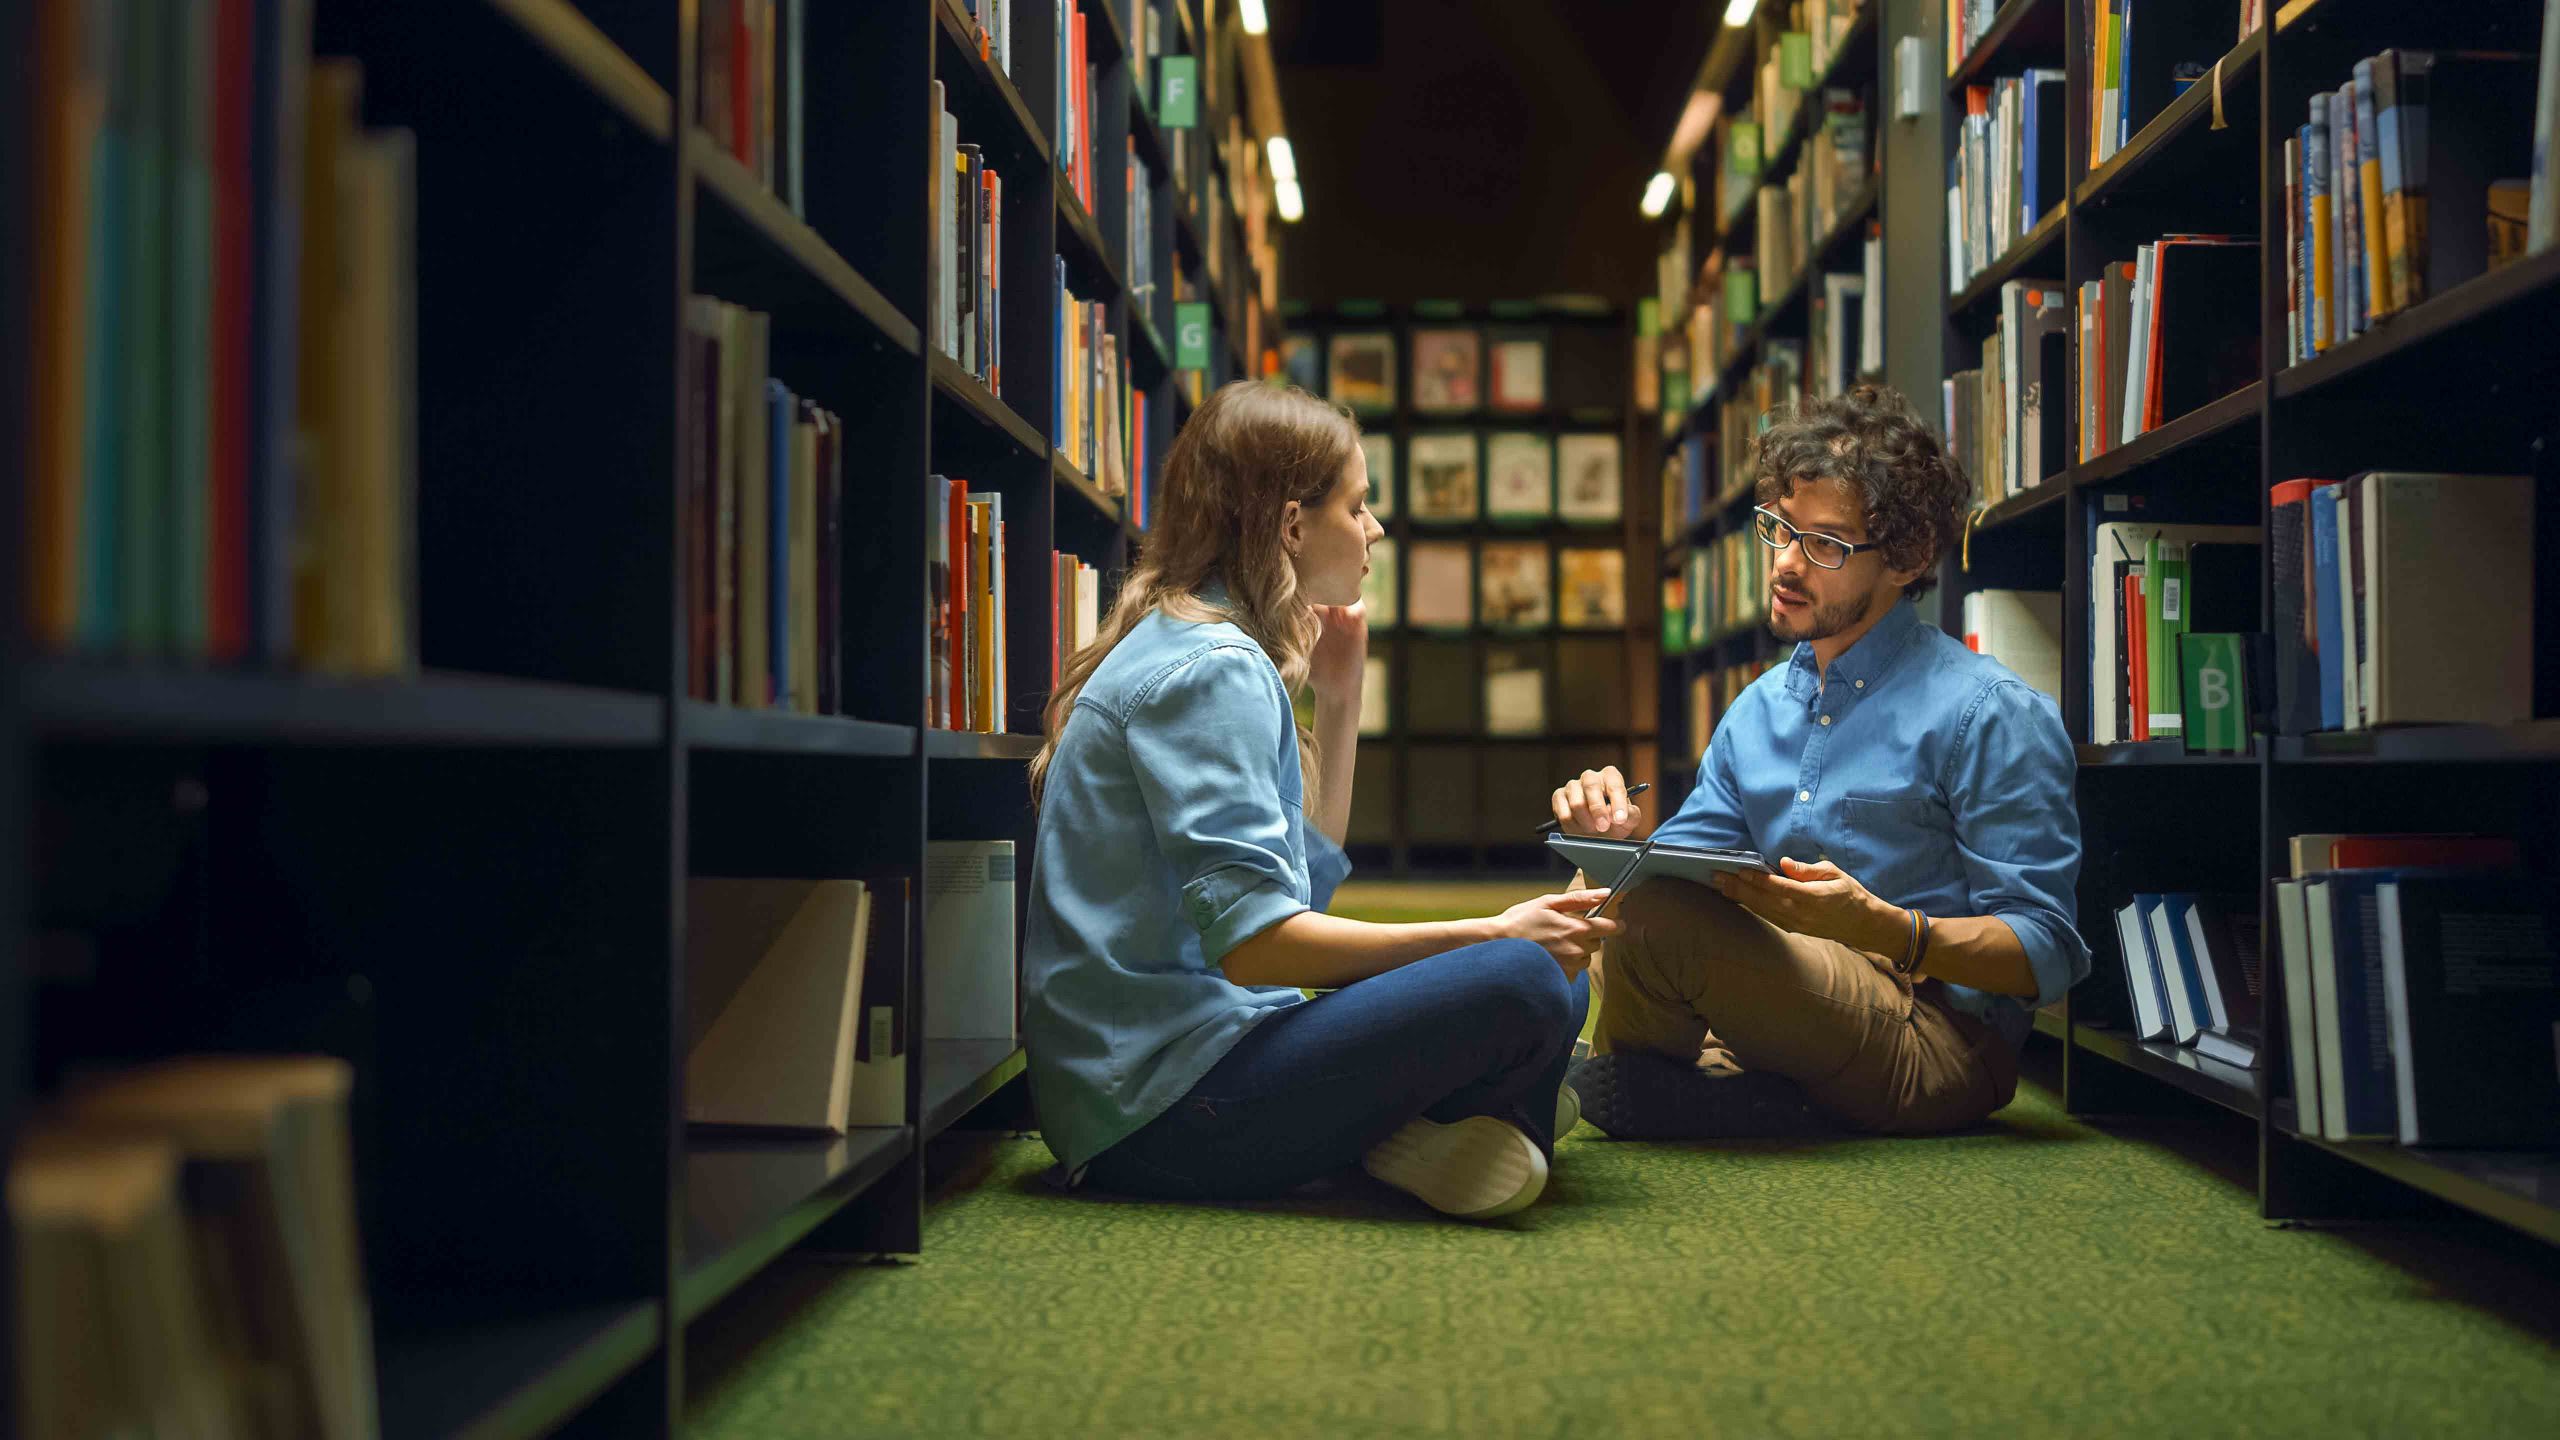 При каждом чешском университете есть библиотека, в которой абитуриент может найти всю необходимую литературу для подготовки к вступительным испытаниям. Источник: Shutterstock